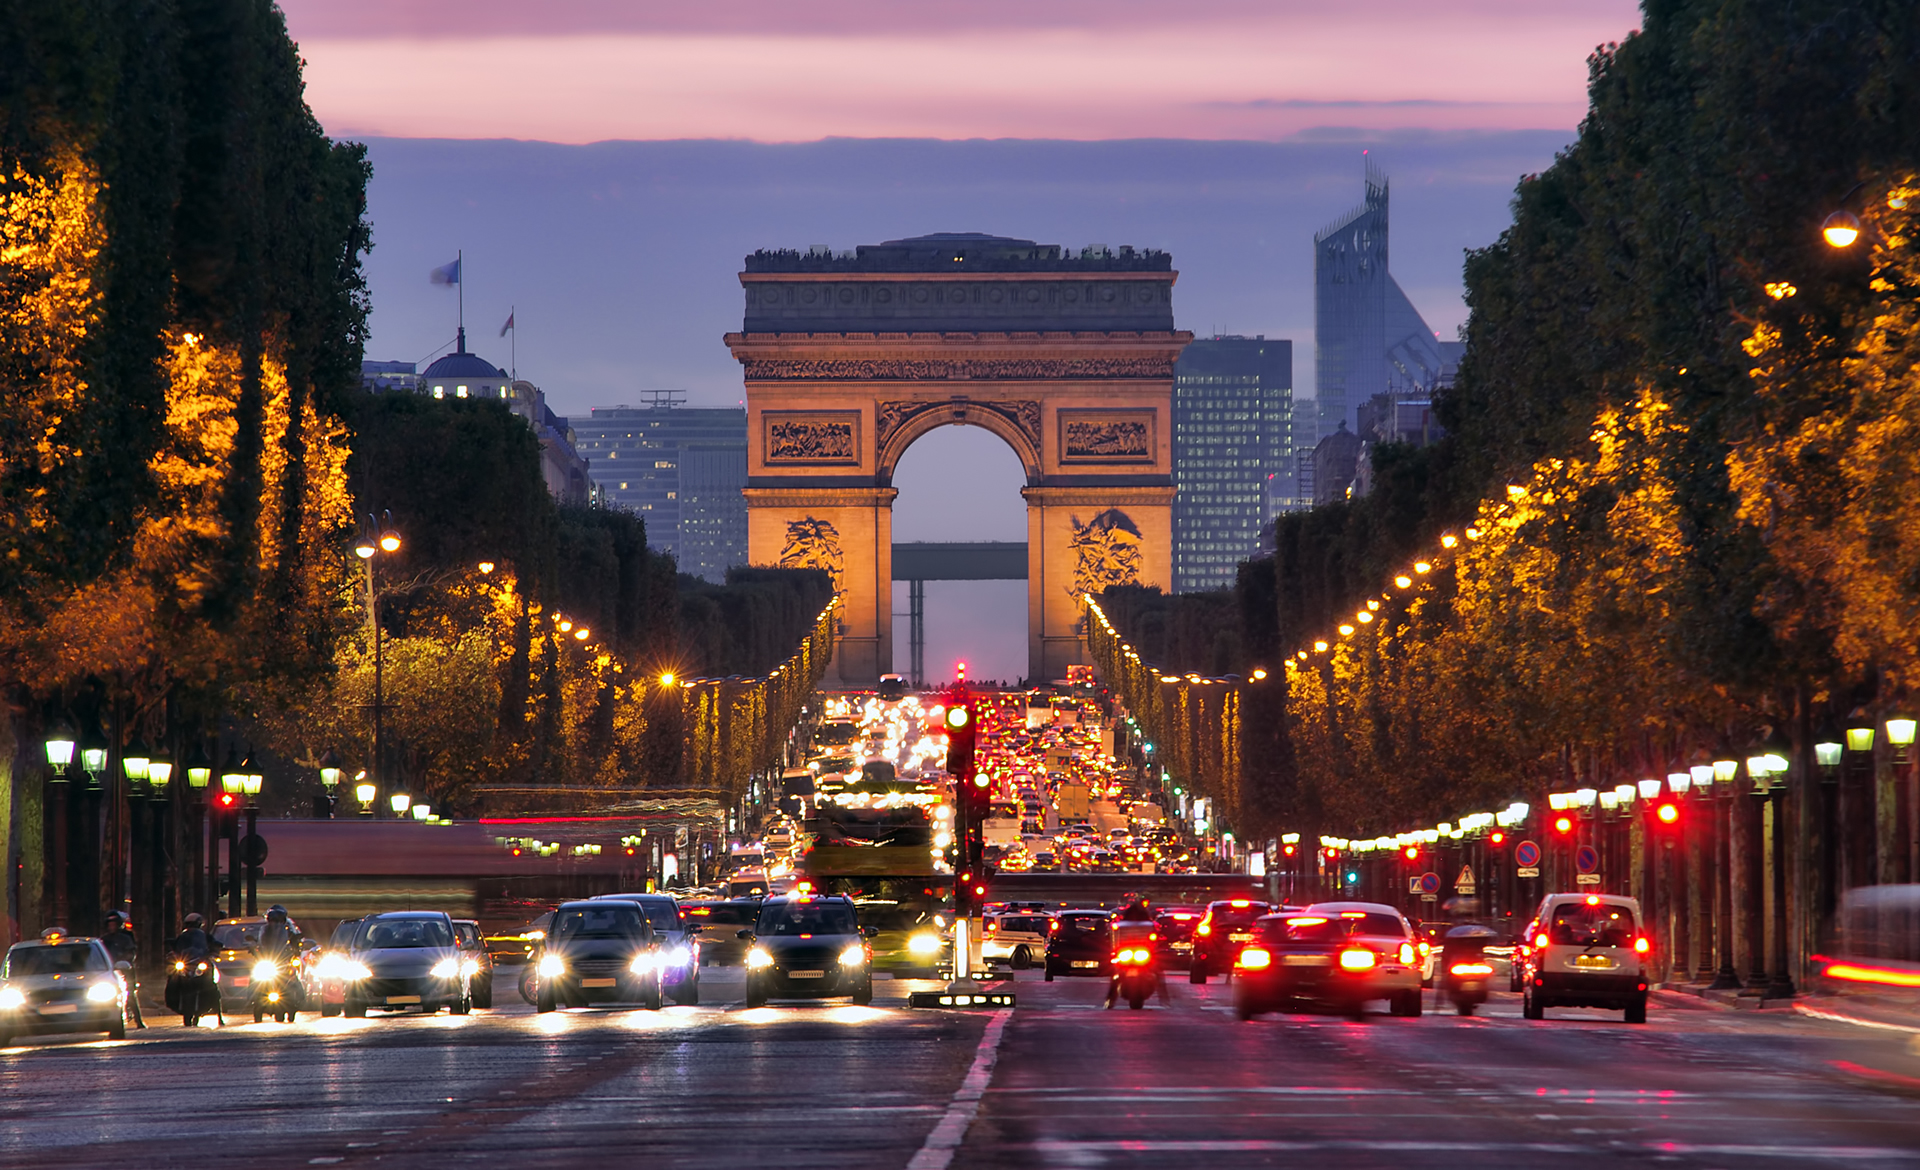 Champs Elysees / Arc of Triumph paris